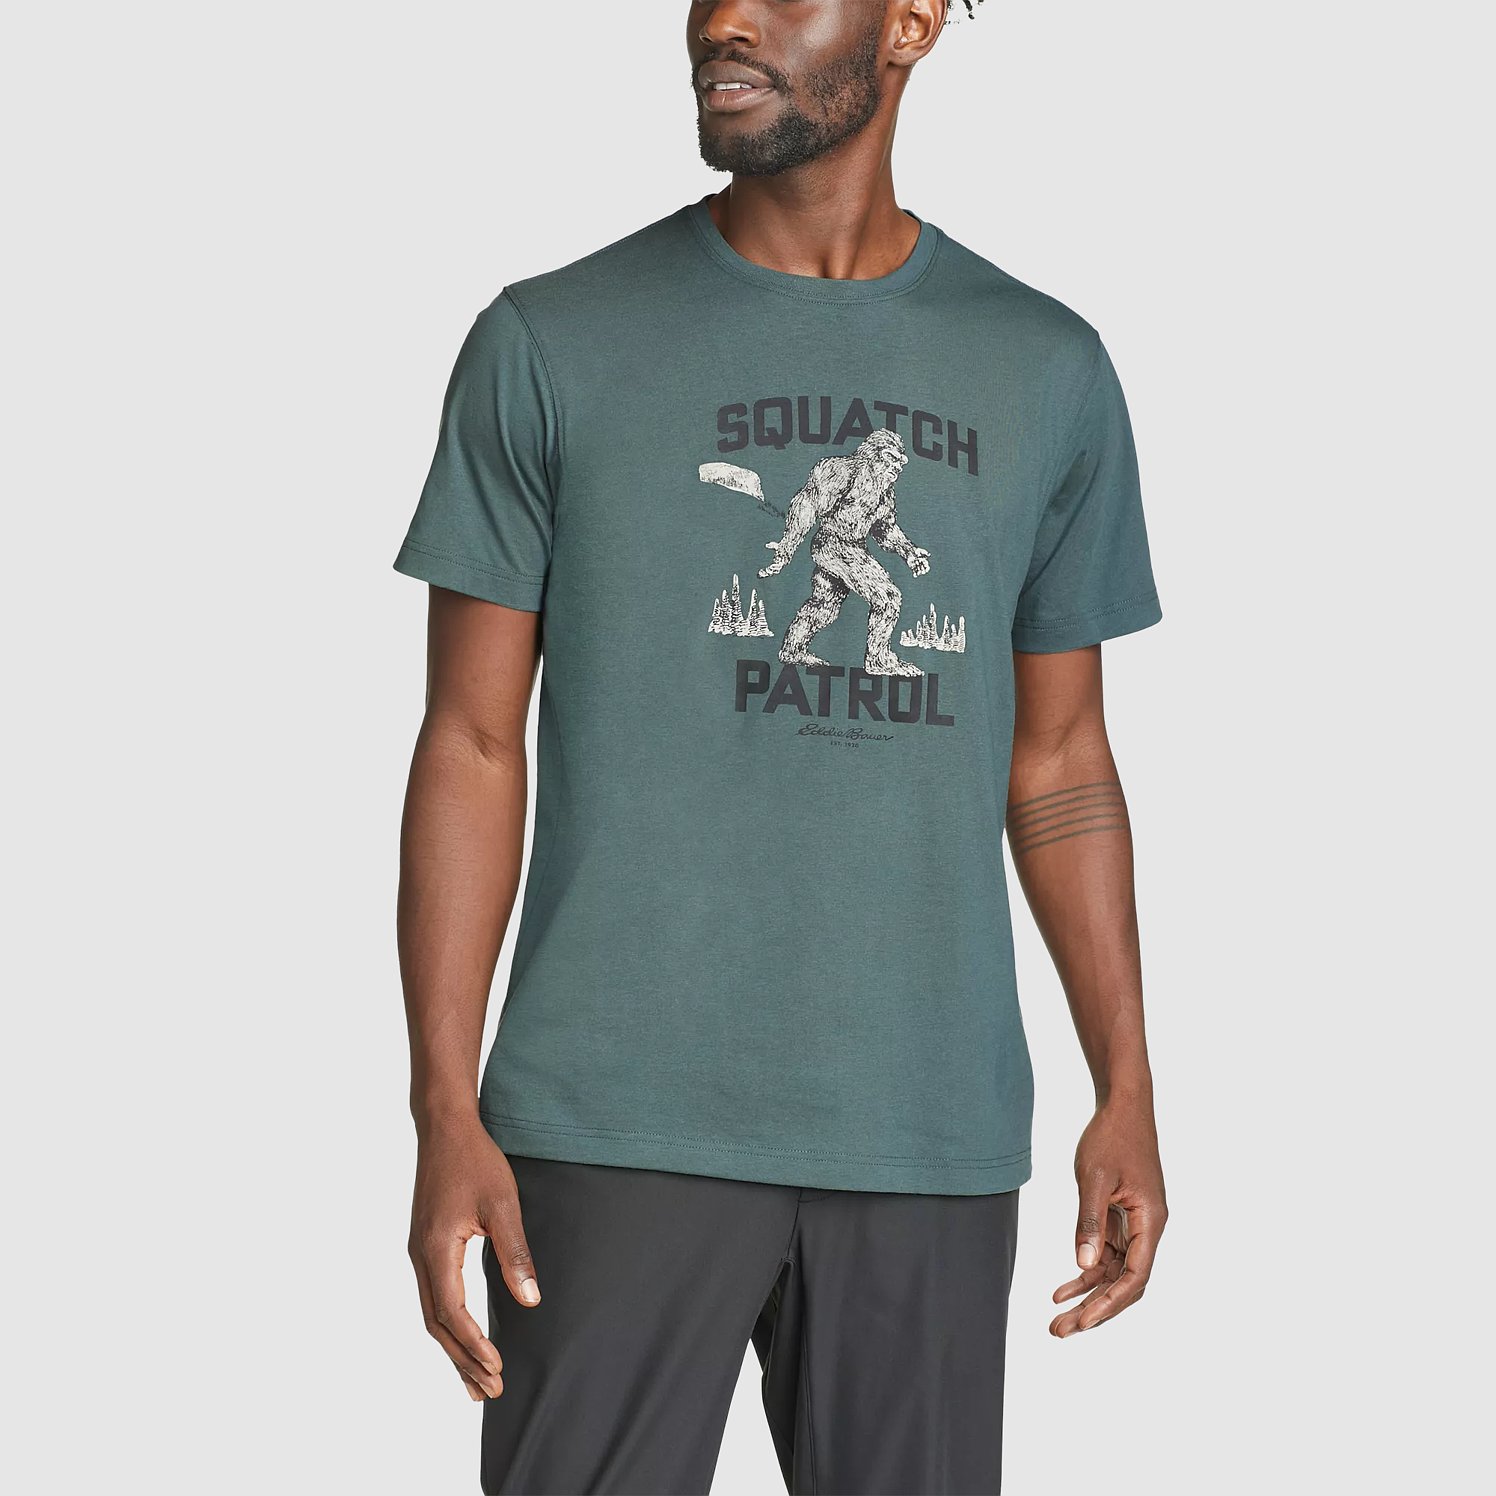 Eddie Bauer Men's Graphic T-Shirt - Squatch Patrol - Green - Medium